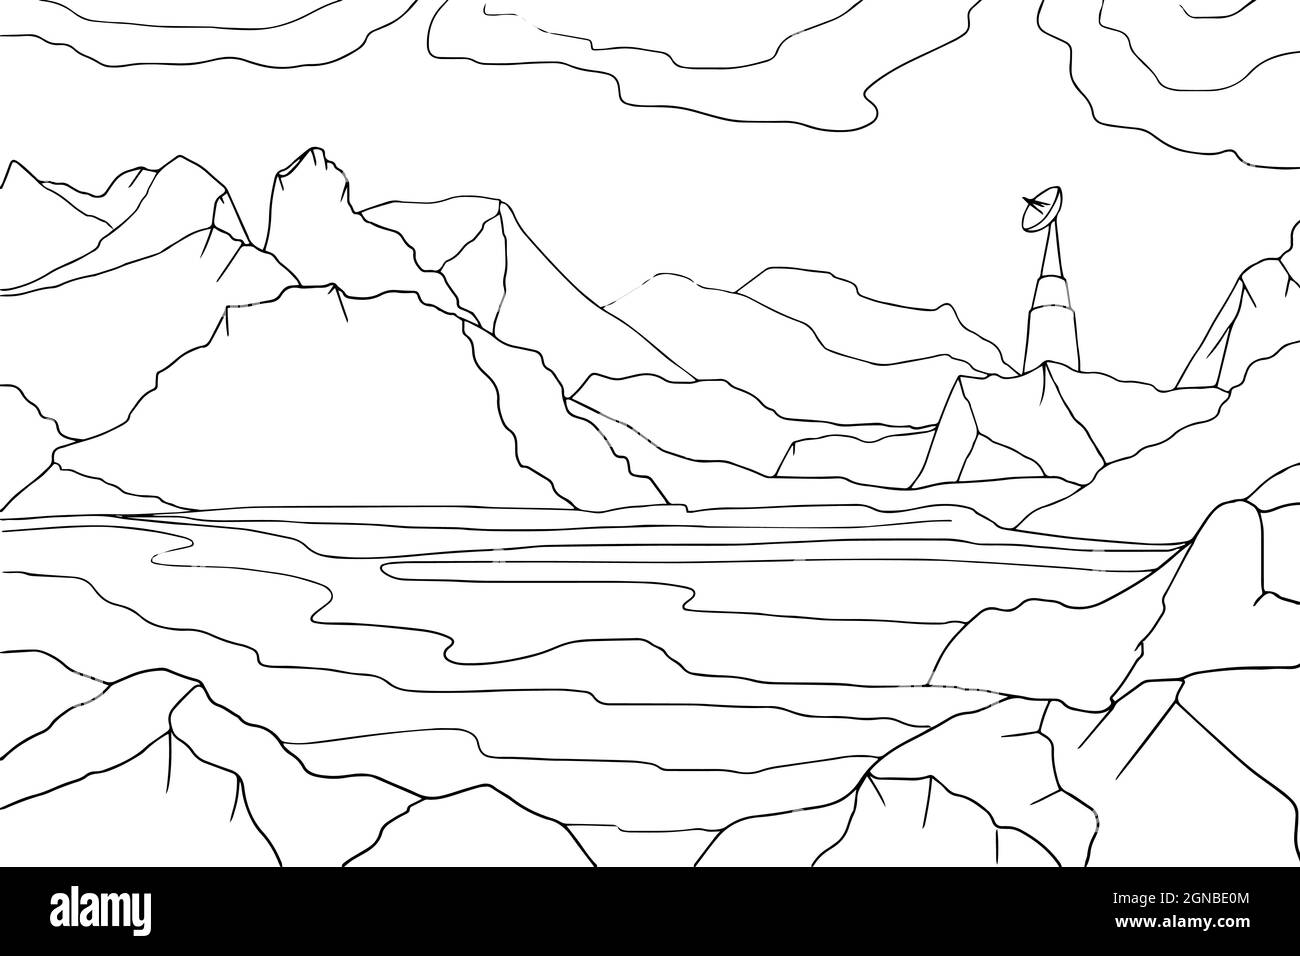 Doodle Alien Fantasy Landschaft mit großen Felsen Malvorlagen für Erwachsene. Fantastische psychedelische Grafik. Vektor von Hand gezeichnet einfach flach illustrat Stock Vektor